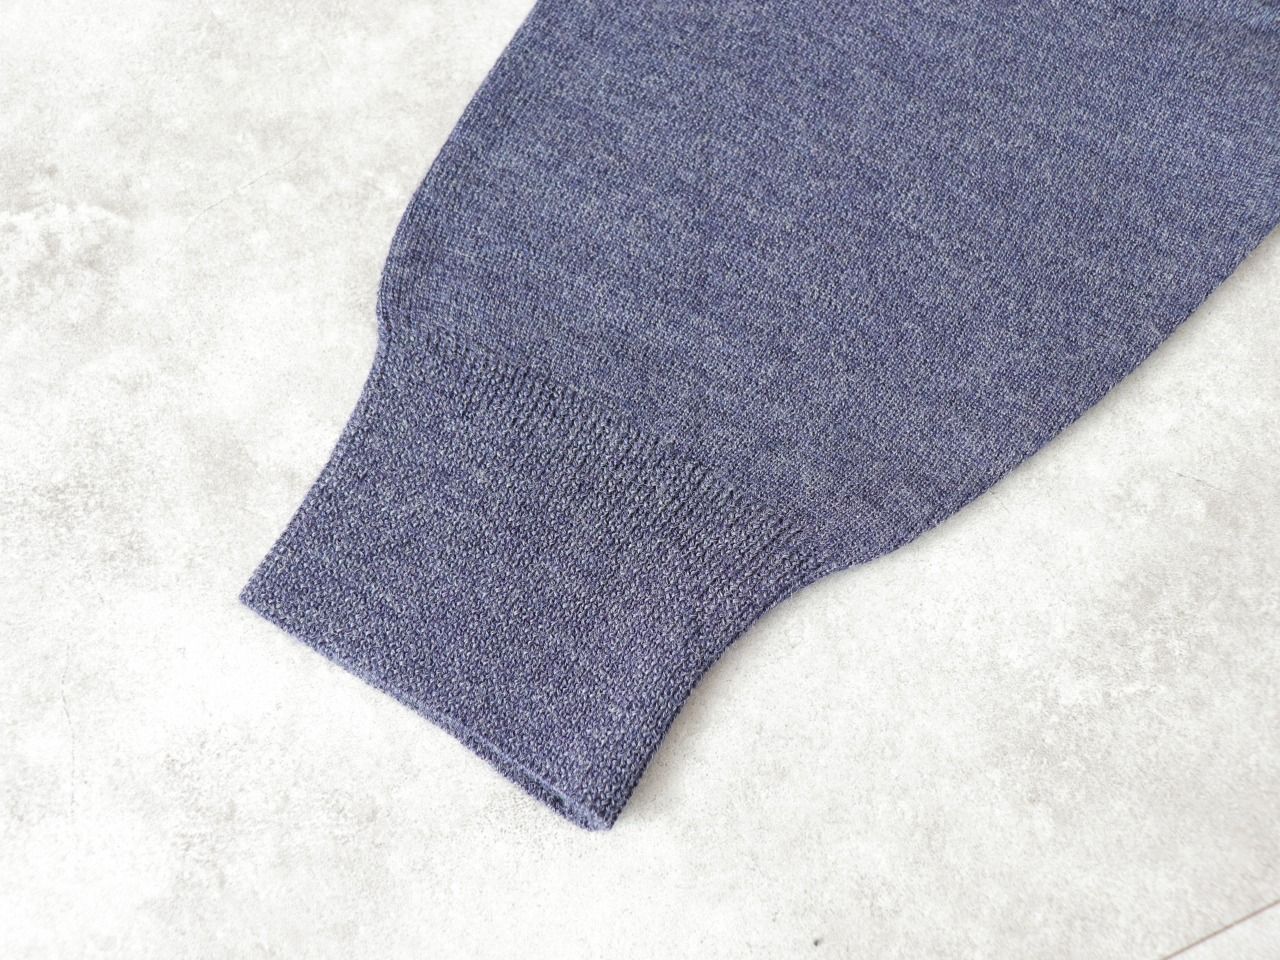 【SALE】LiSS / washable mockneck knit - NV